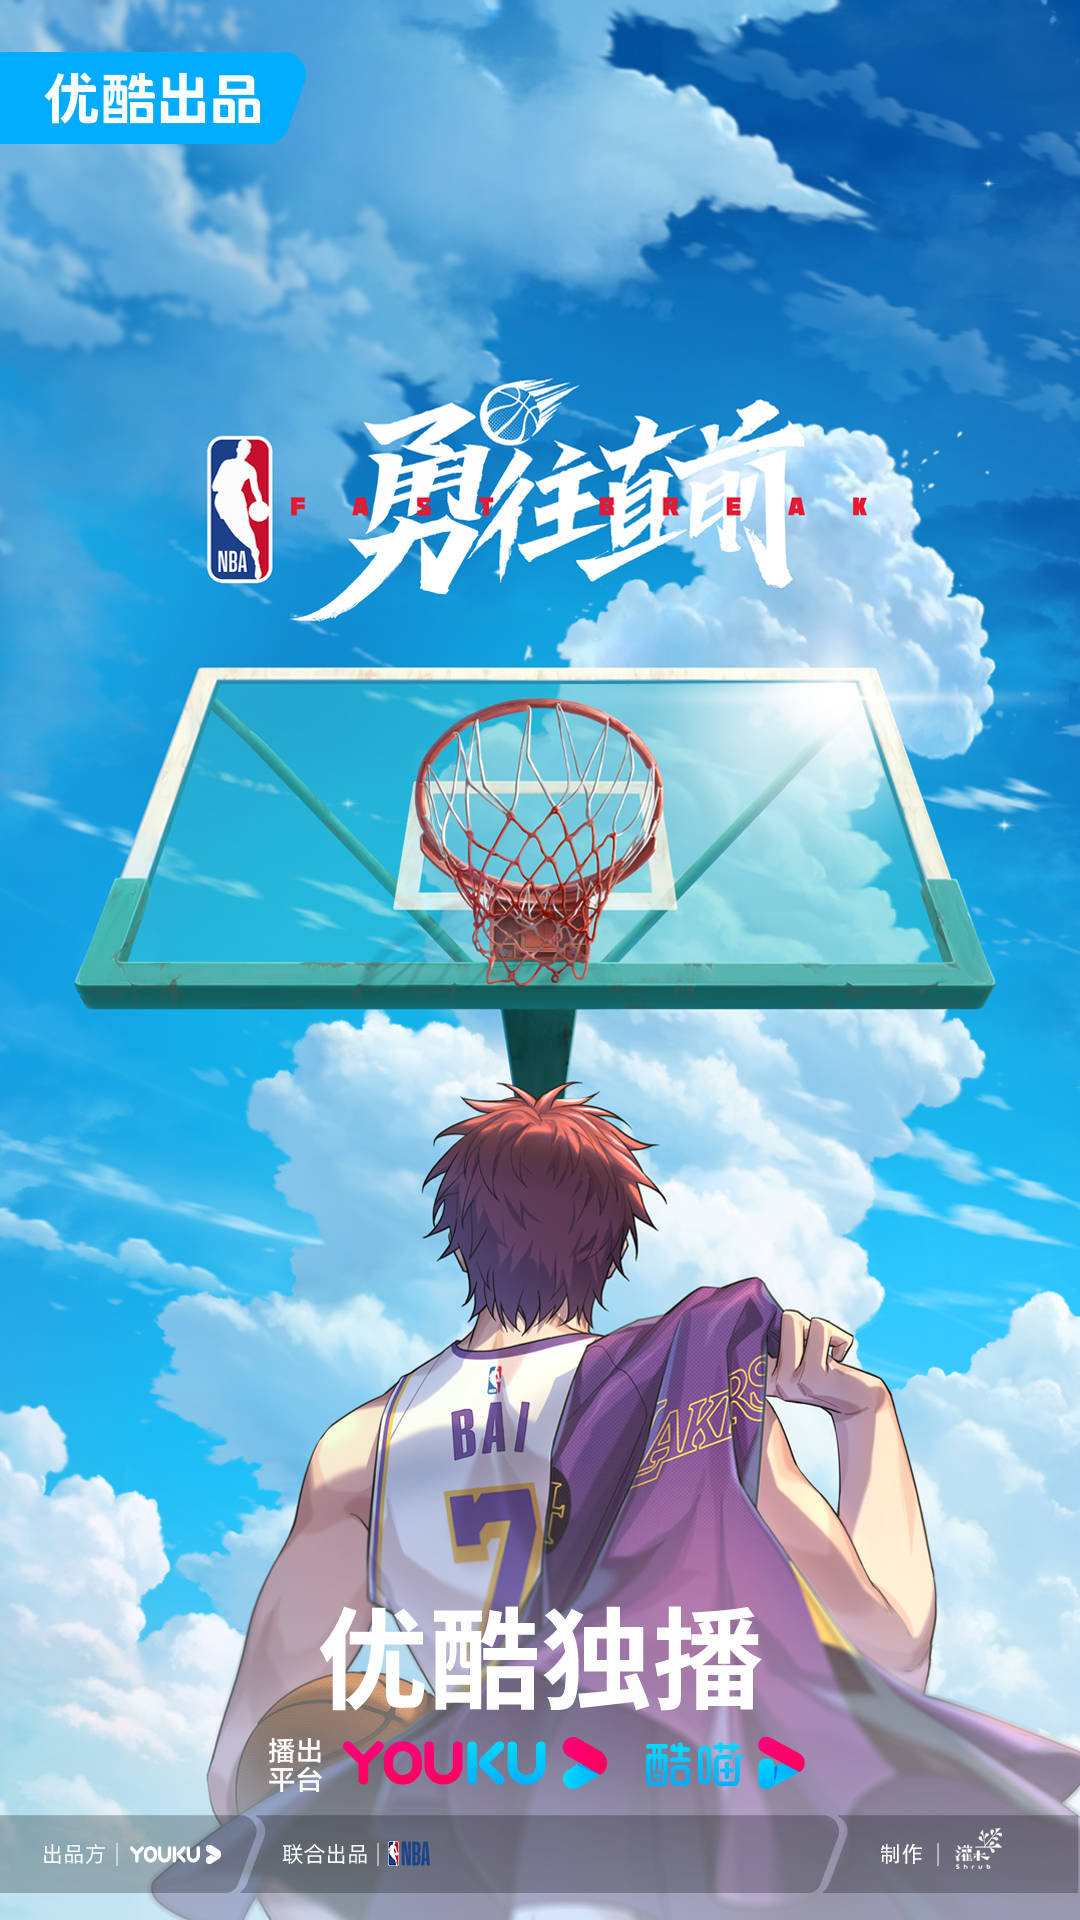 优酷携手NBA中国打造动画《勇往直前》全新PV燃爆释出